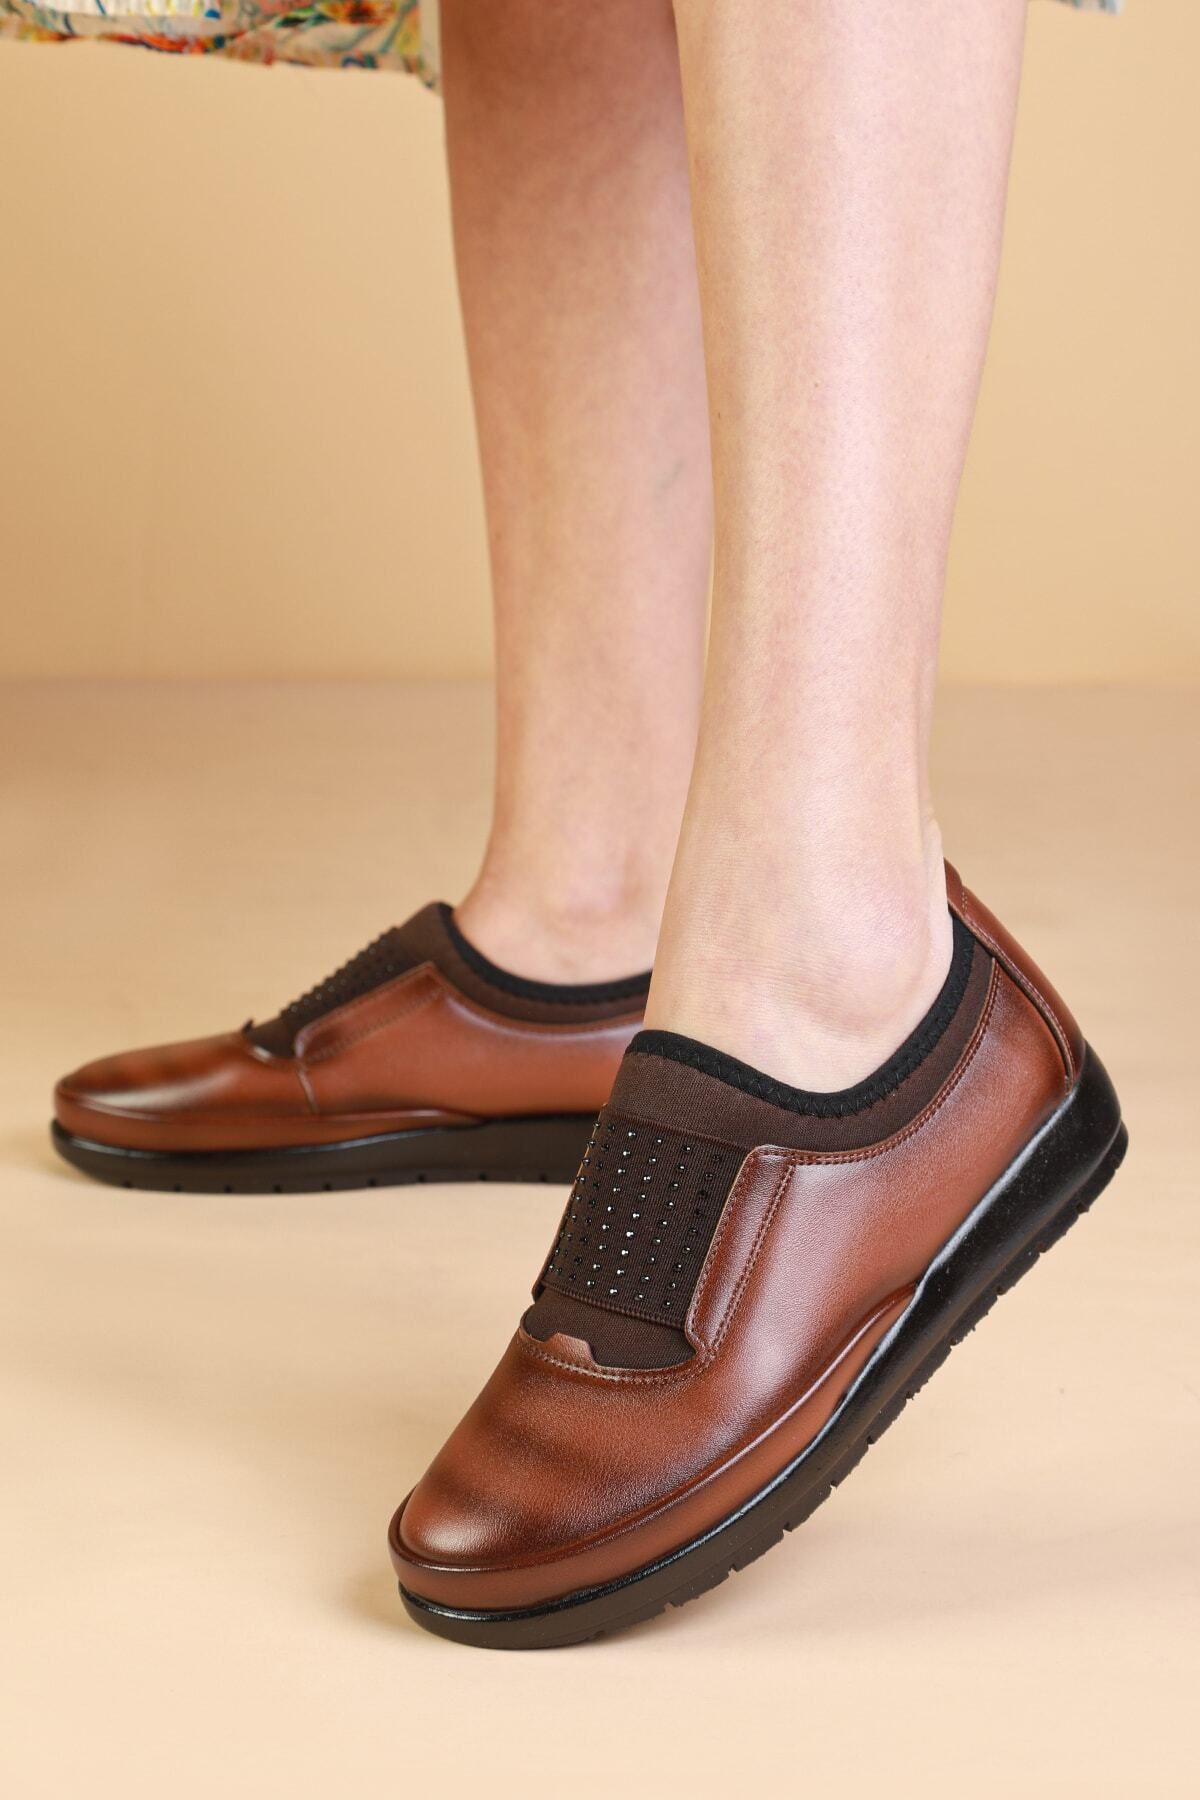 Yüce KOPYA - Yüce Kadın Siyah Günlük Ayakkabı